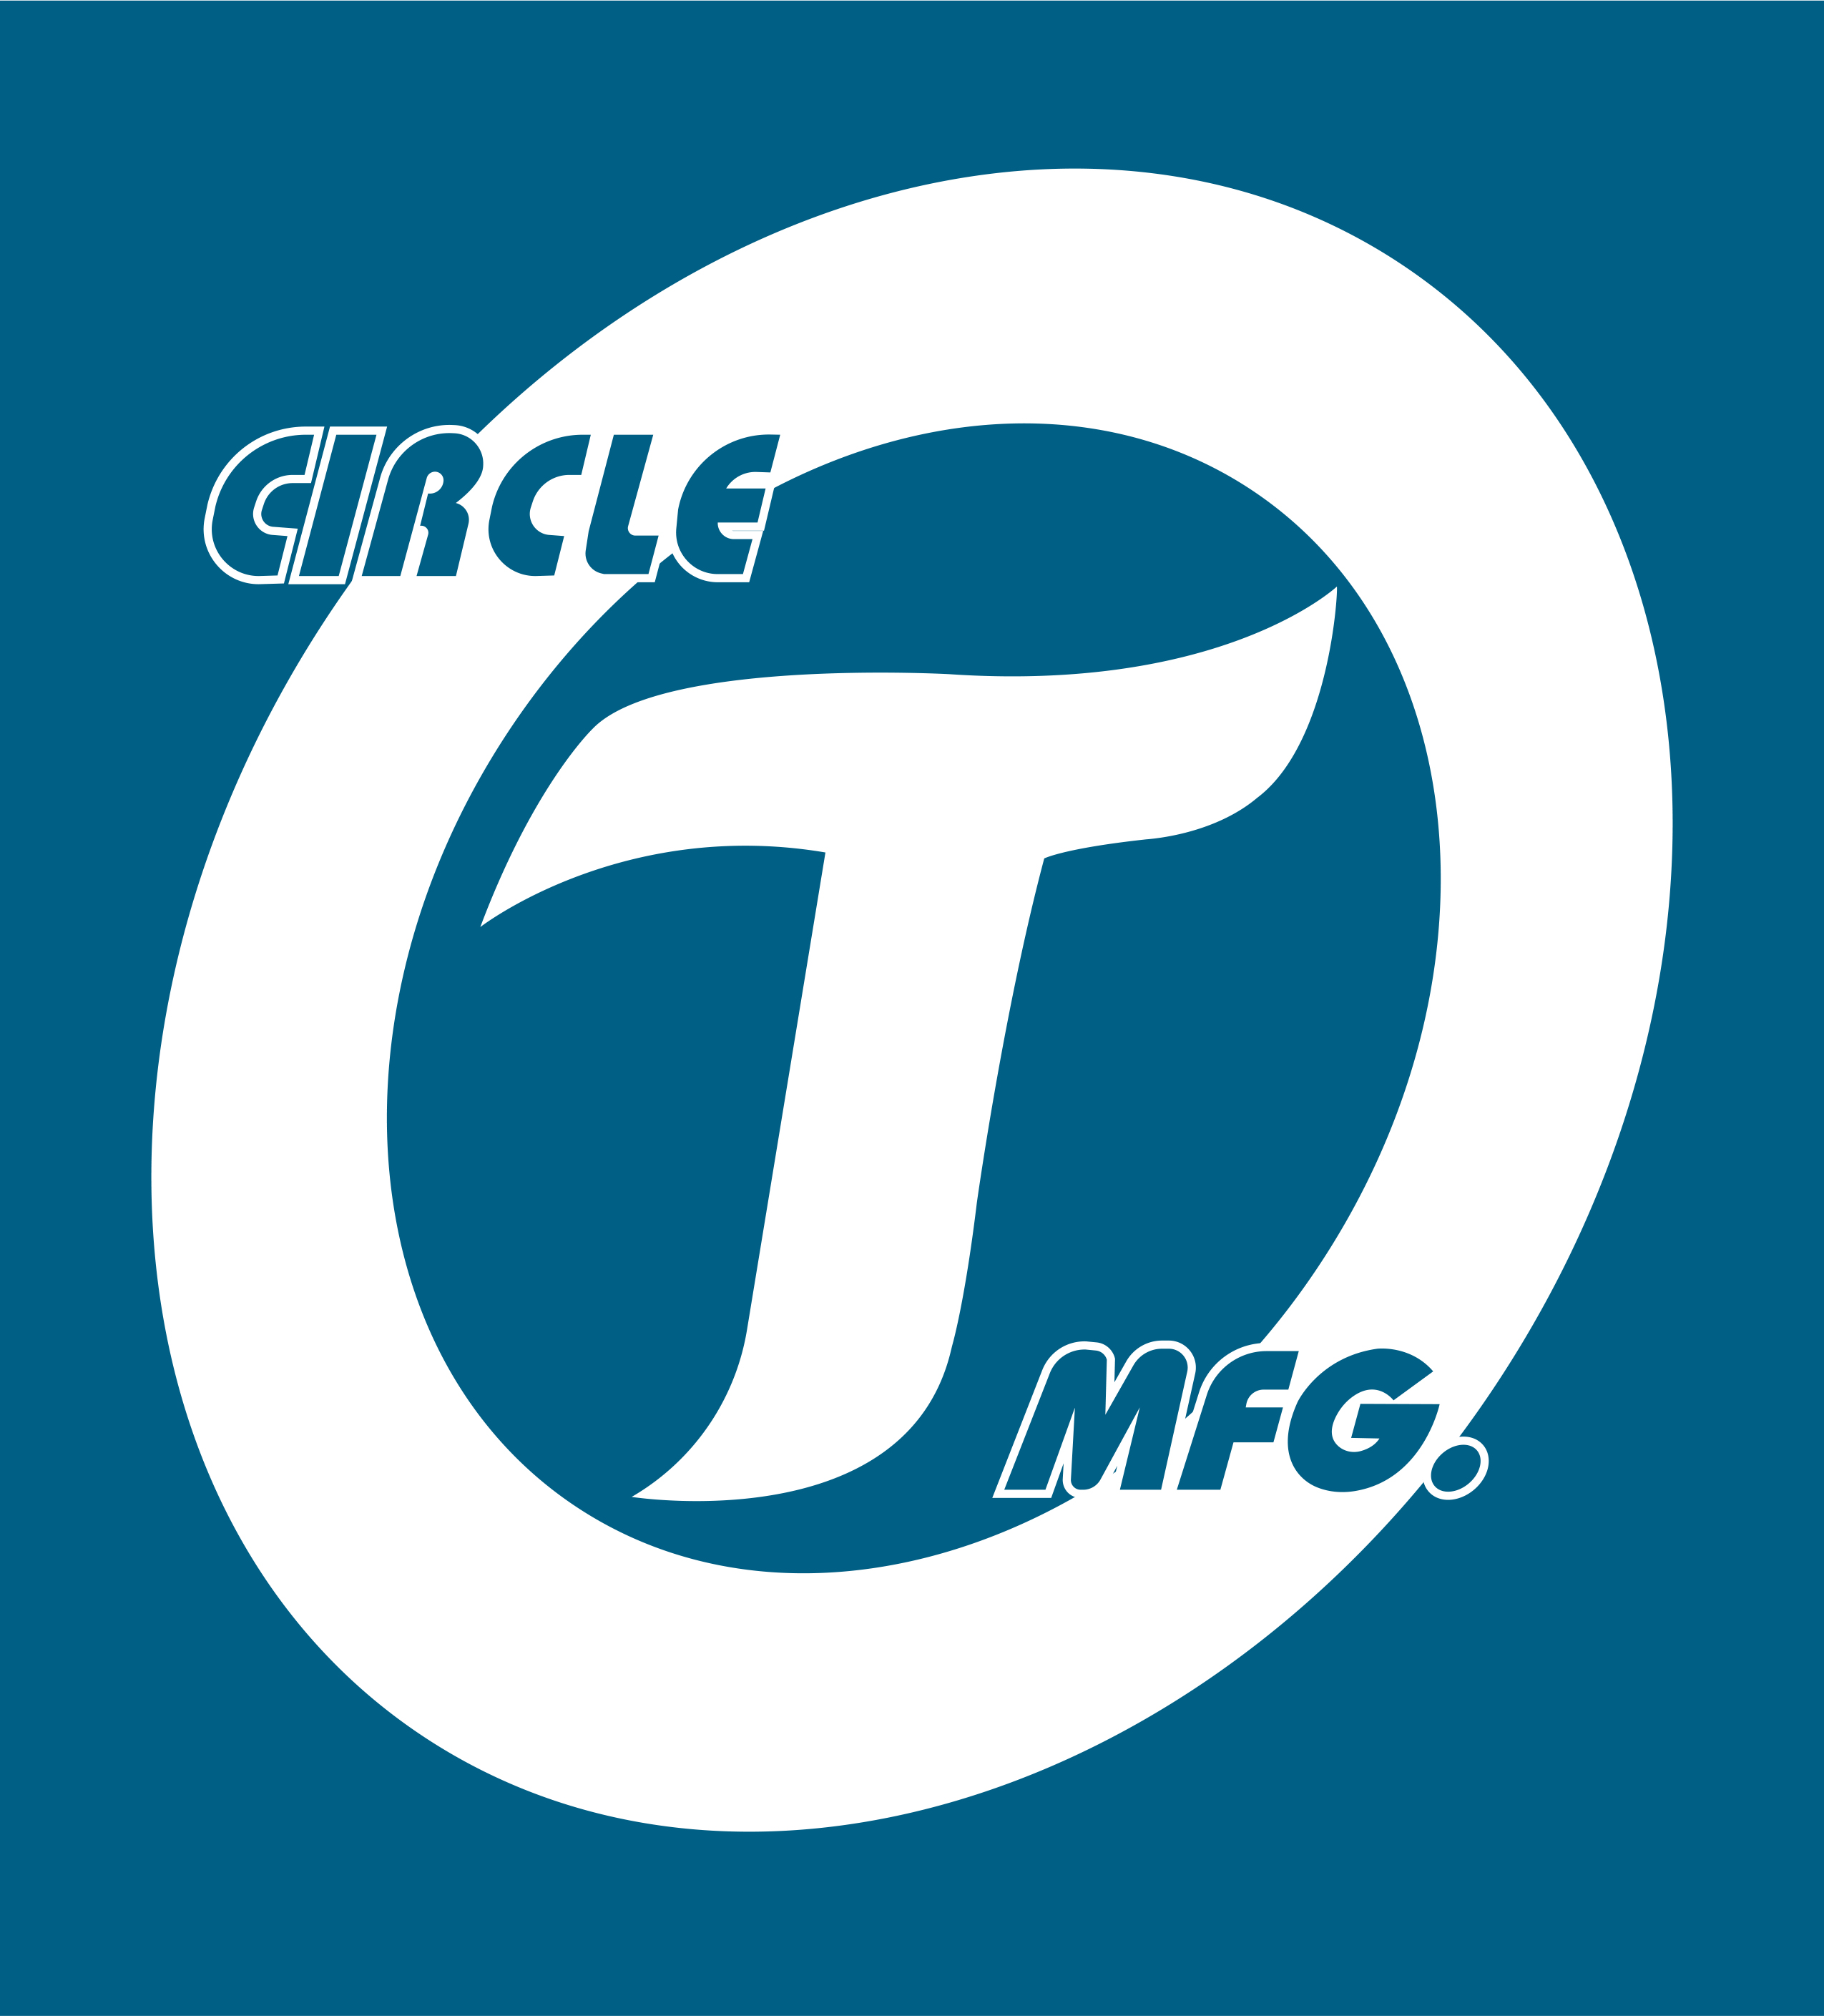 Circle T Logo.jpg